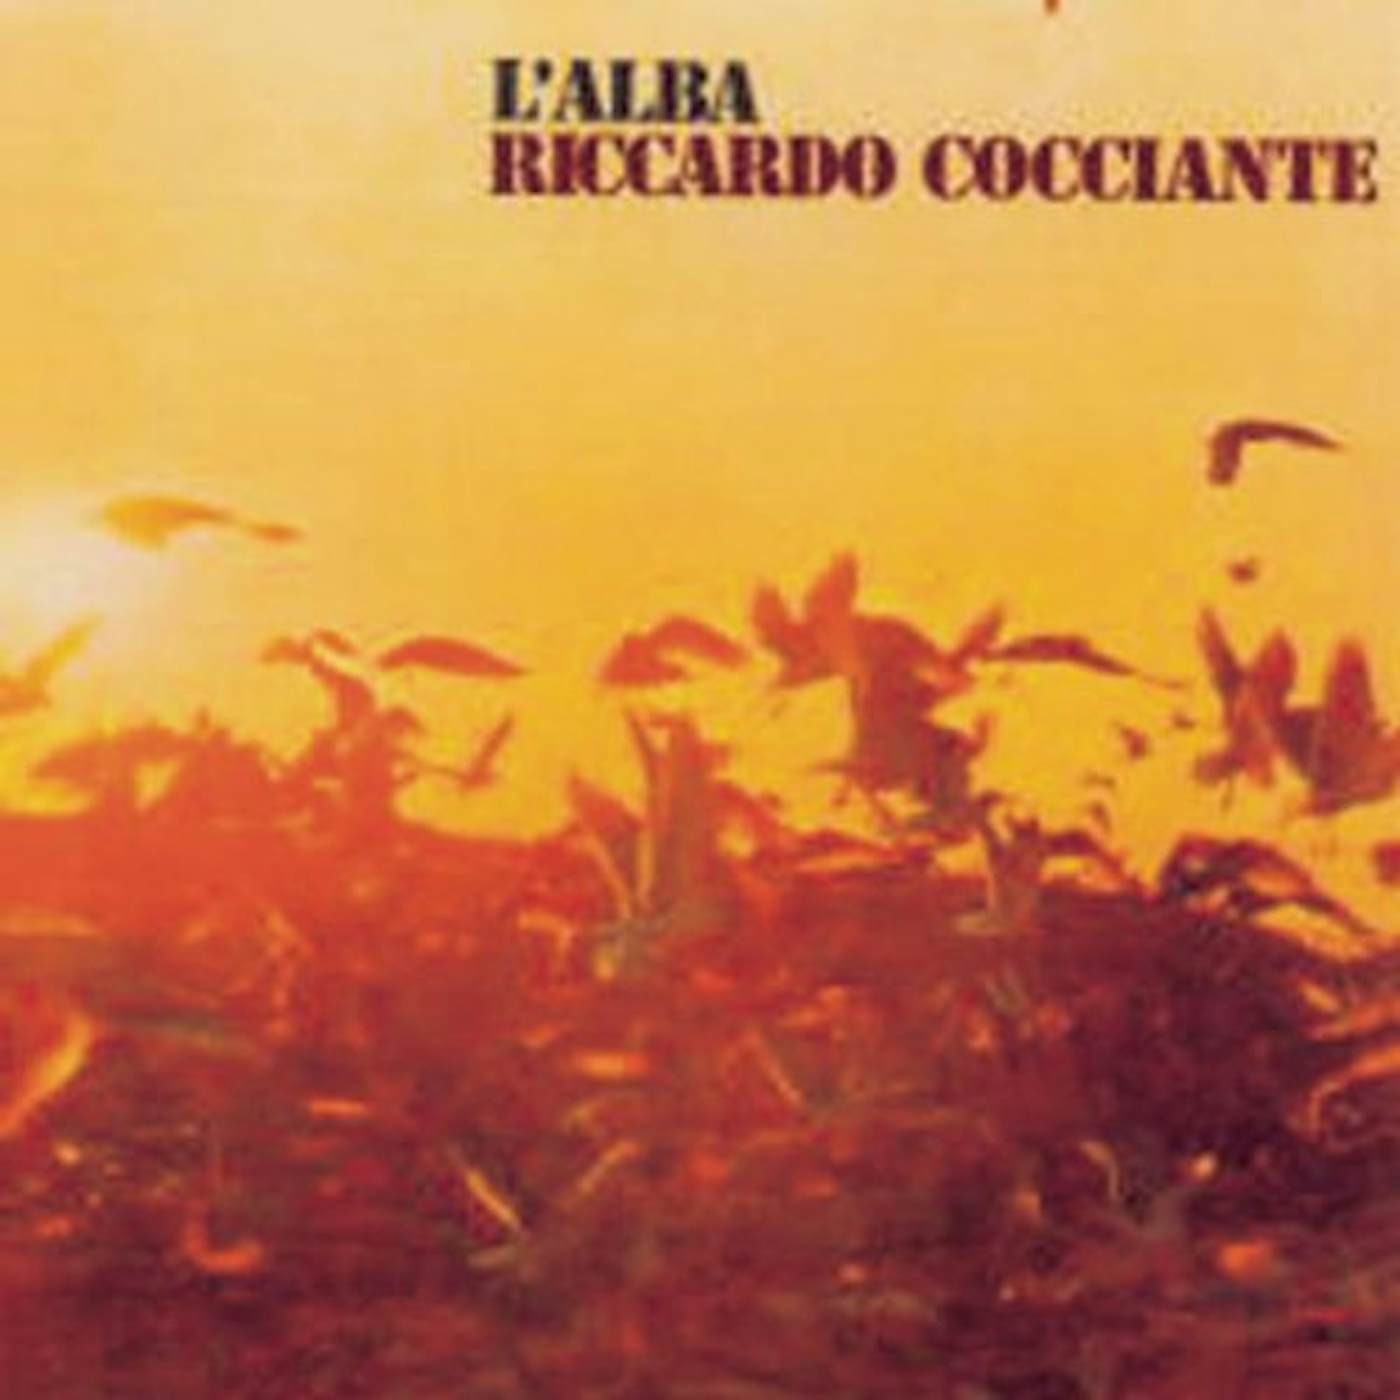 Riccardo Cocciante L'Alba Vinyl Record